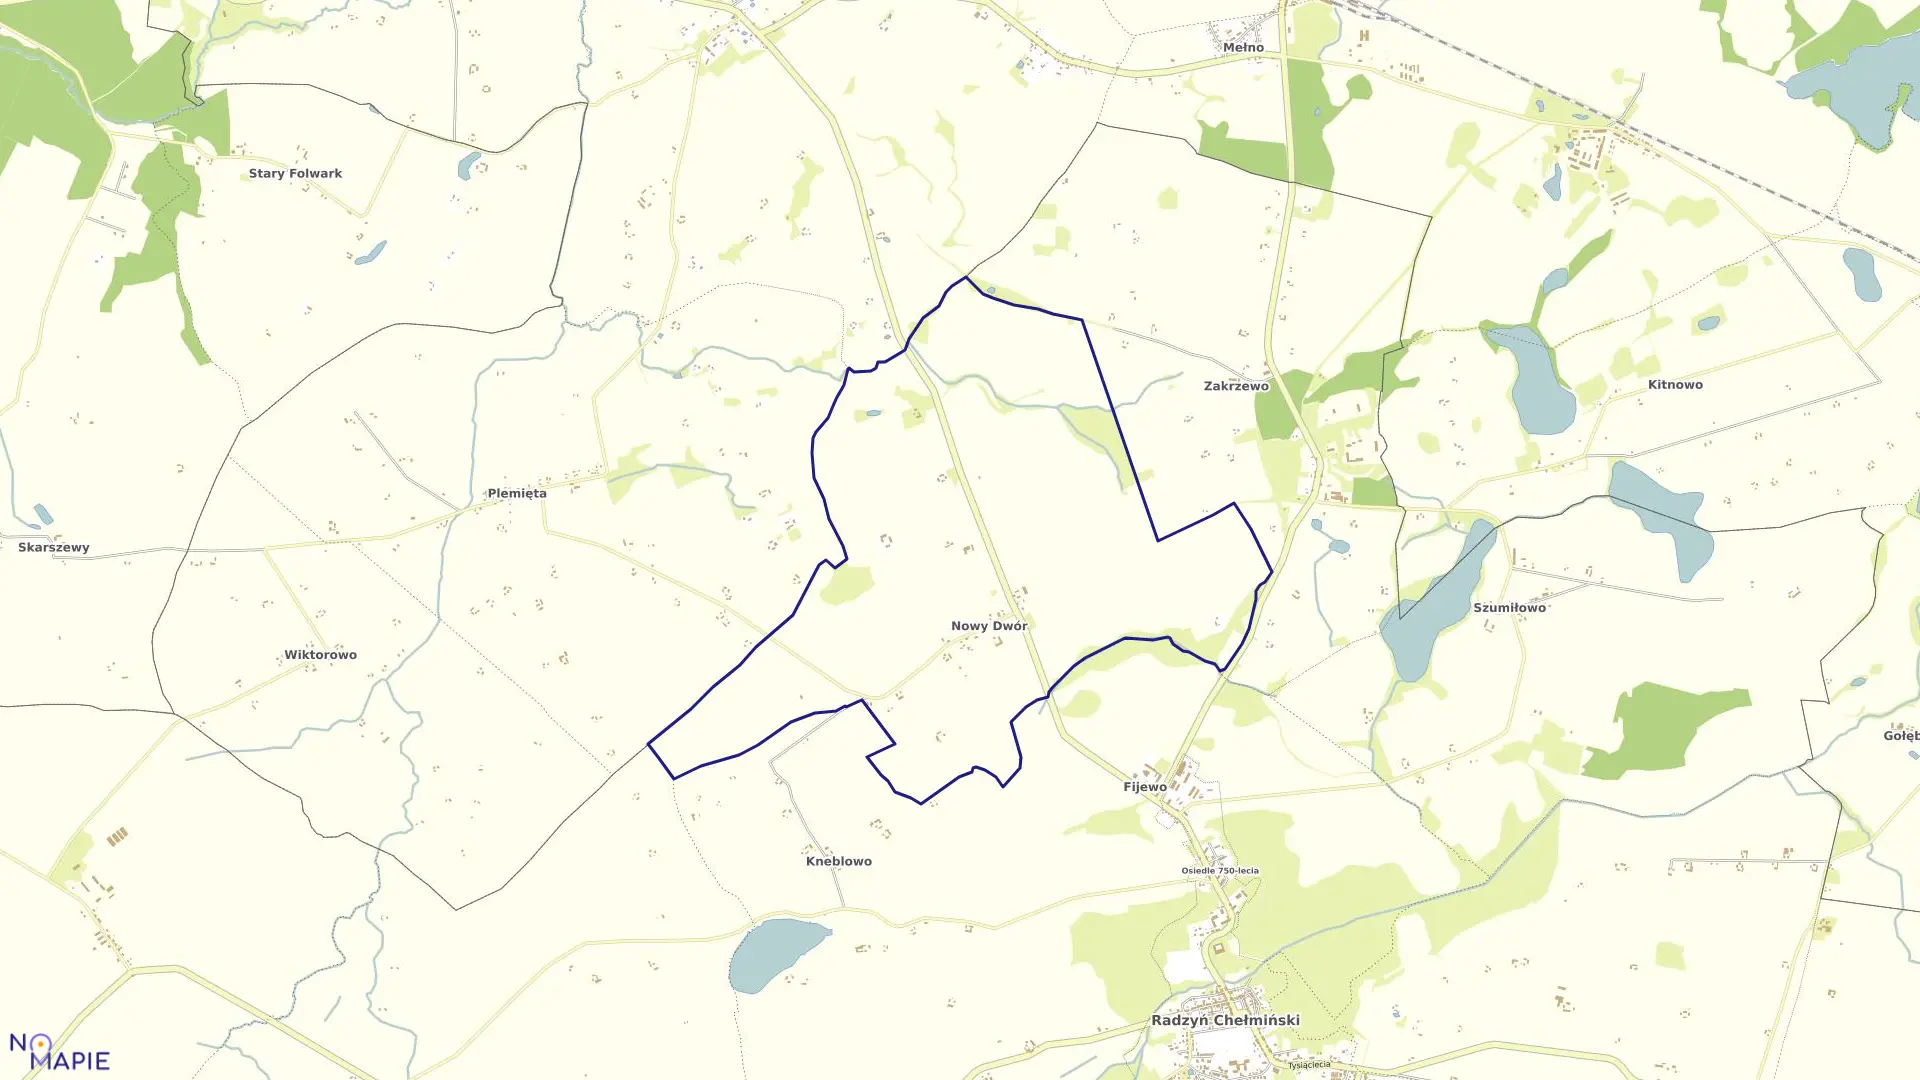 Mapa obrębu Nowy Dwór w gminie Radzyń Chełmiński